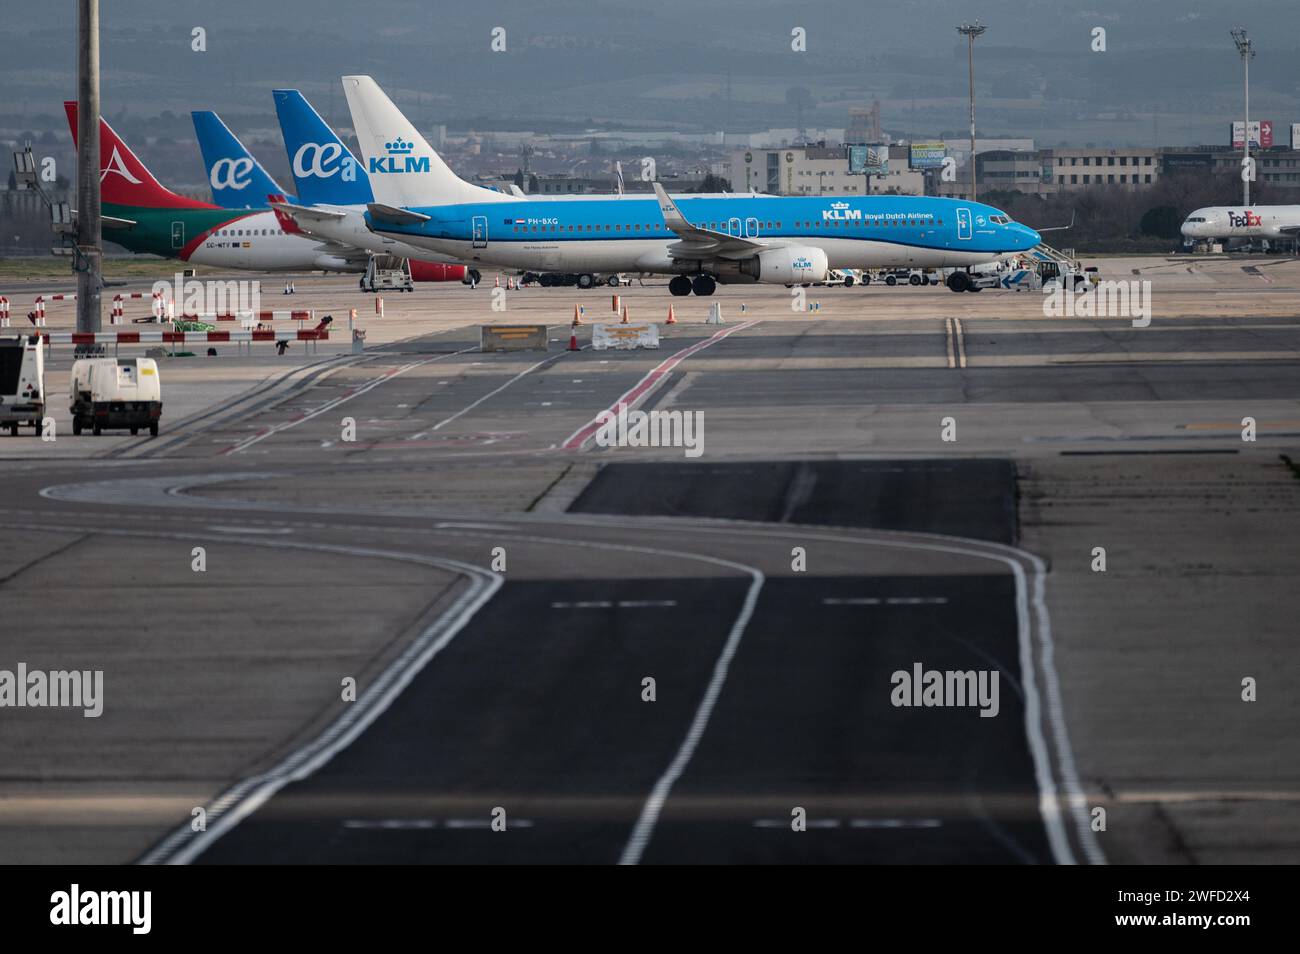 Avions stationnés à l'aéroport Adolfo Suarez Madrid-Barajas. Banque D'Images